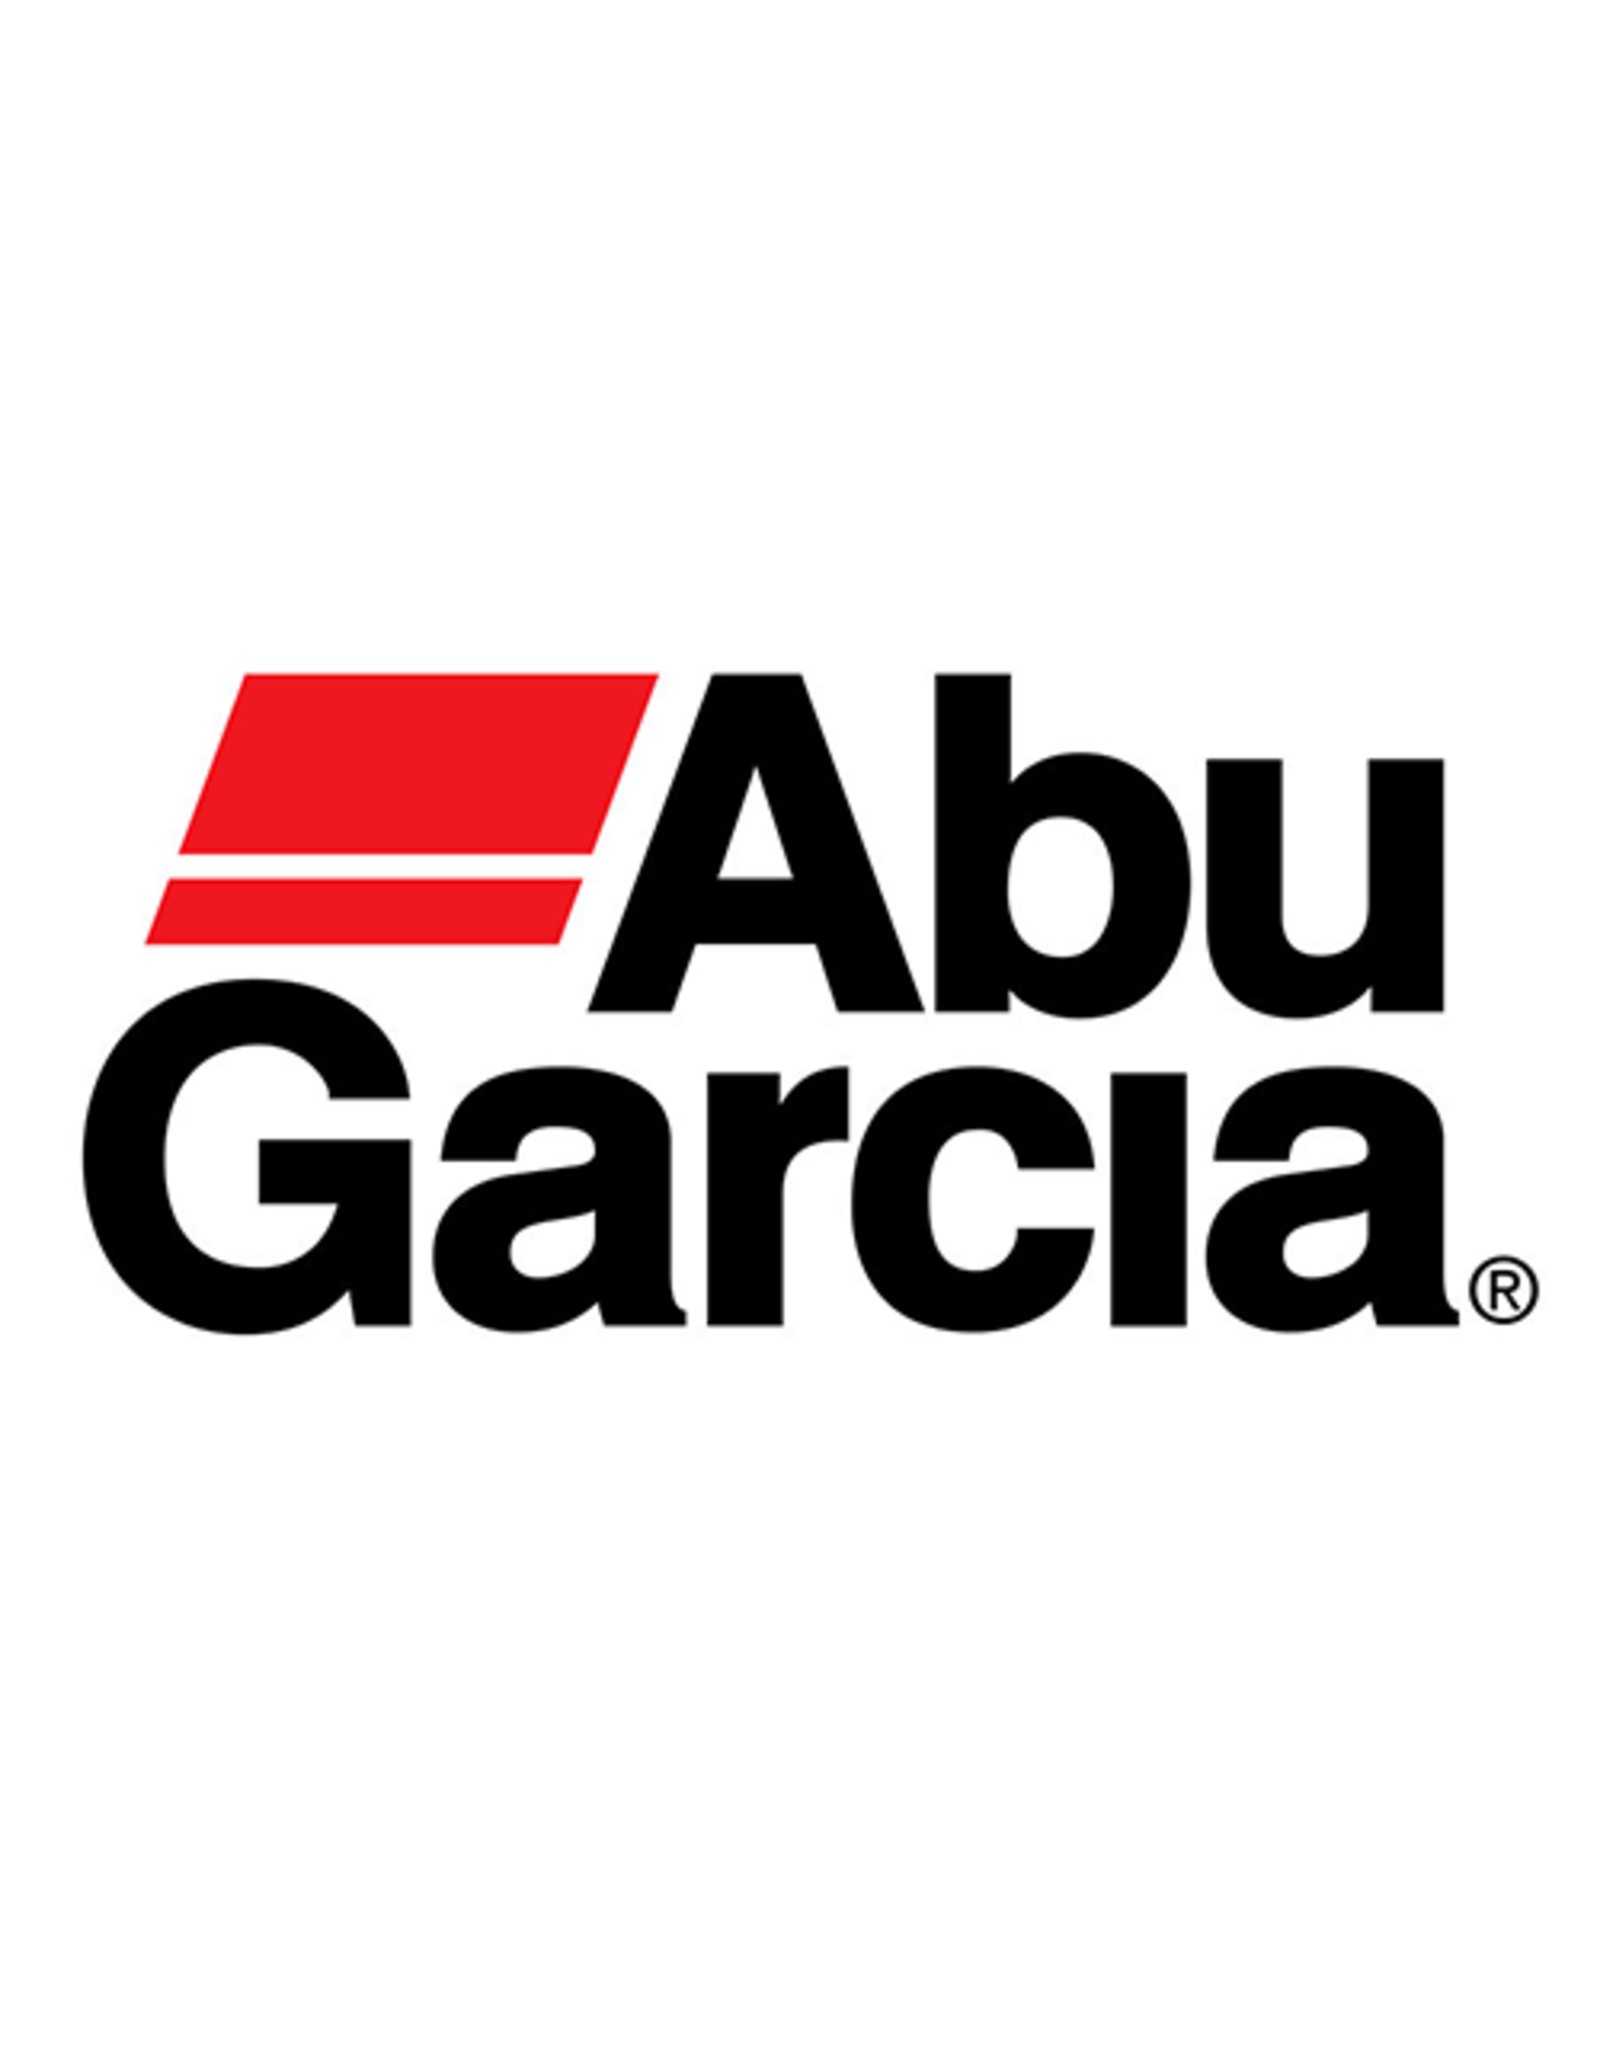 Abu Garcia 1146948  CAST CONTROL ASSY/NLA